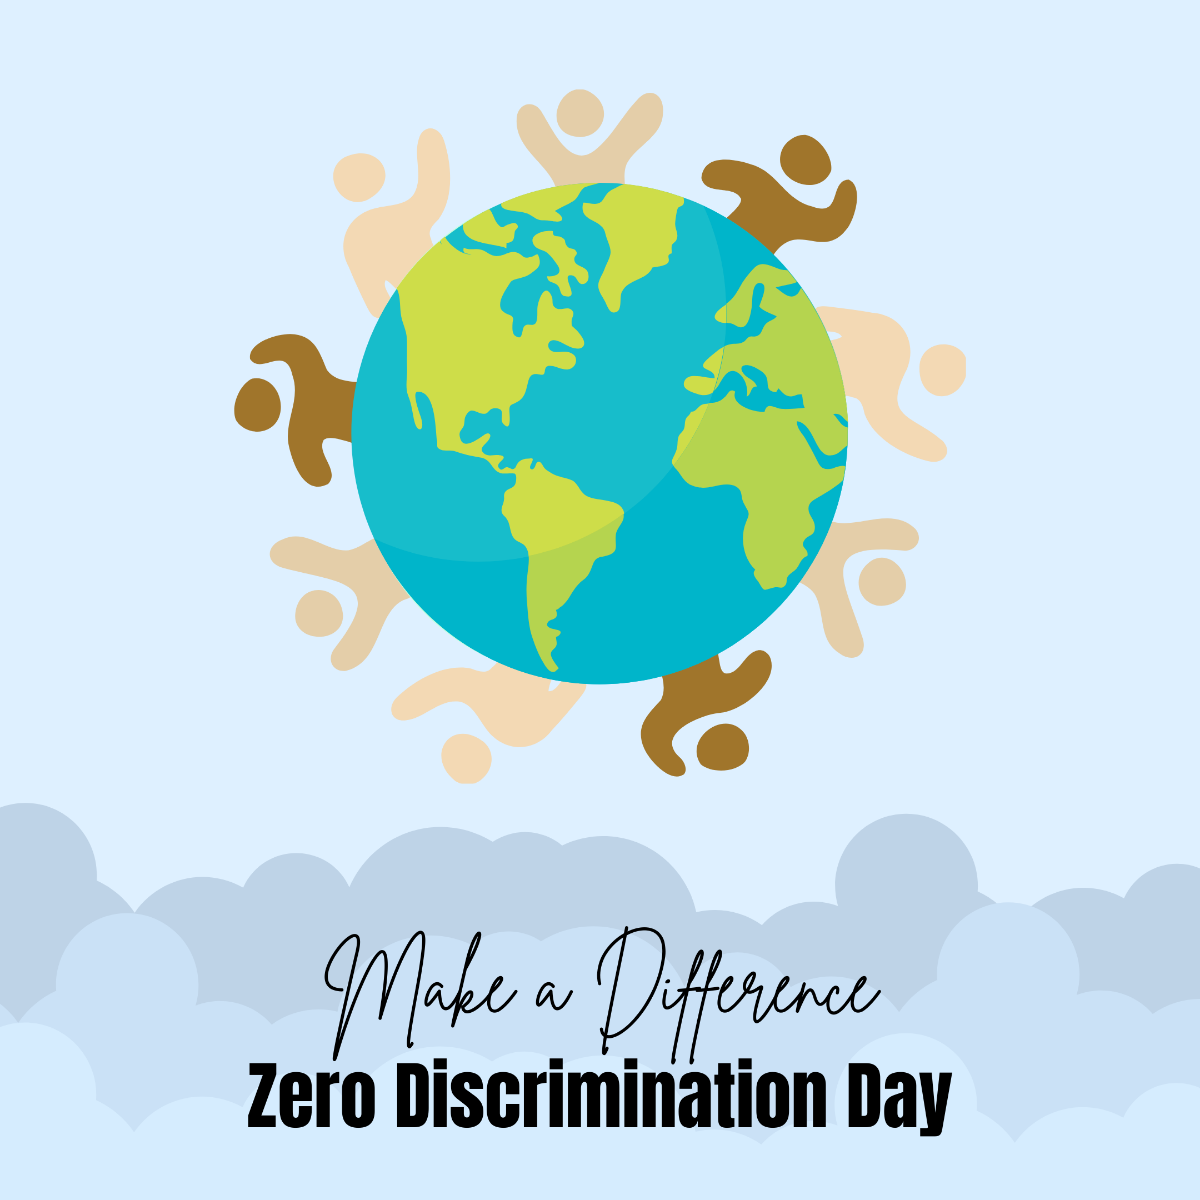 Free Zero Discrimination Day Vector Template